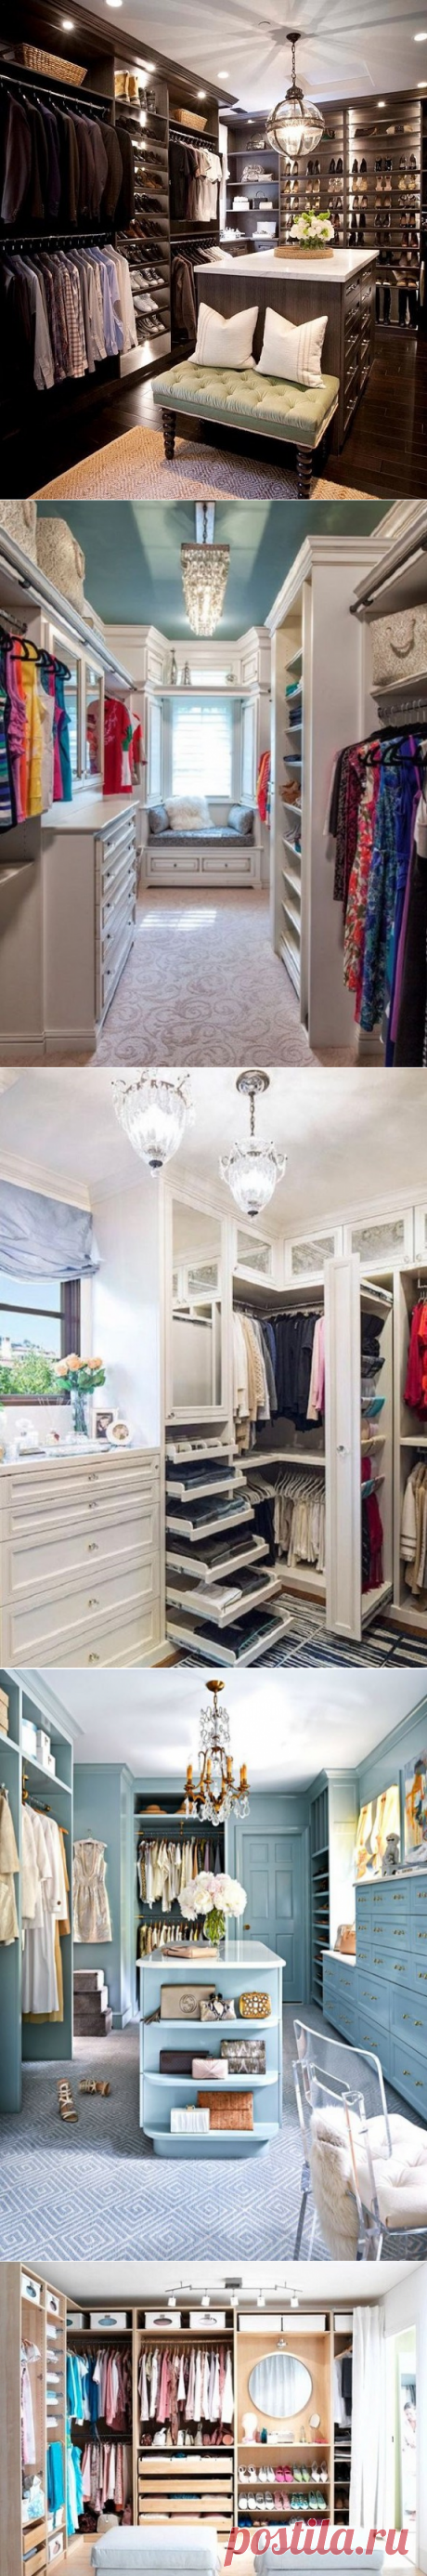 Как обустроить гардеробную: 21 идея для обычных и самых маленьких комнат — Копилочка полезных советов